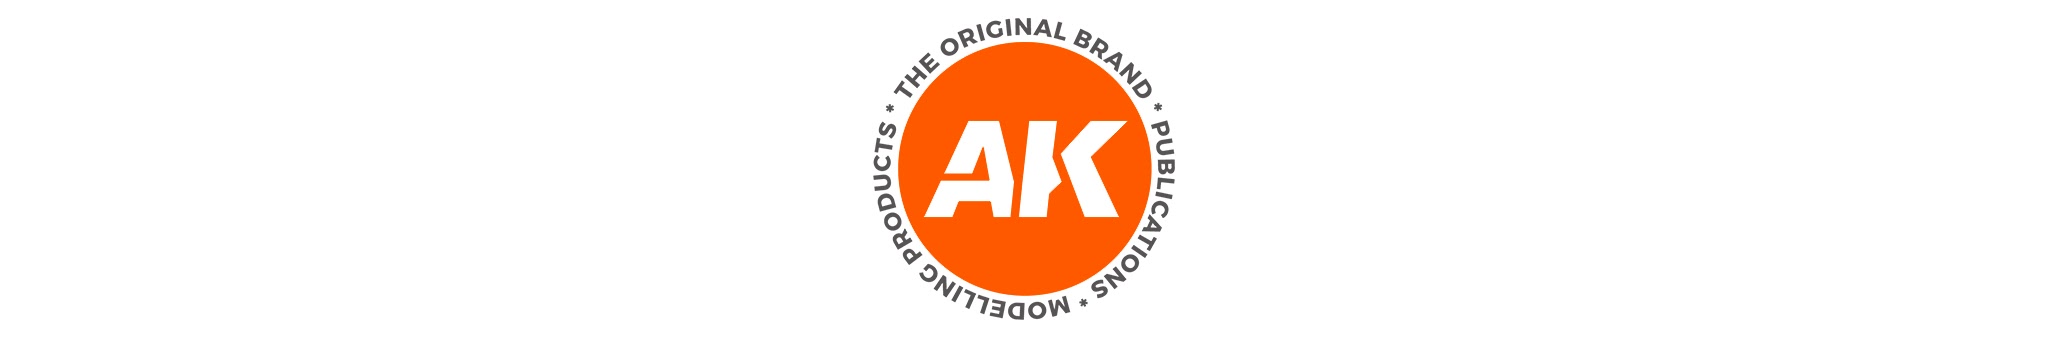 AK Interactive #AKI-11624 Figure Series Splinter Pattern Uniforms 3G Paint  Set